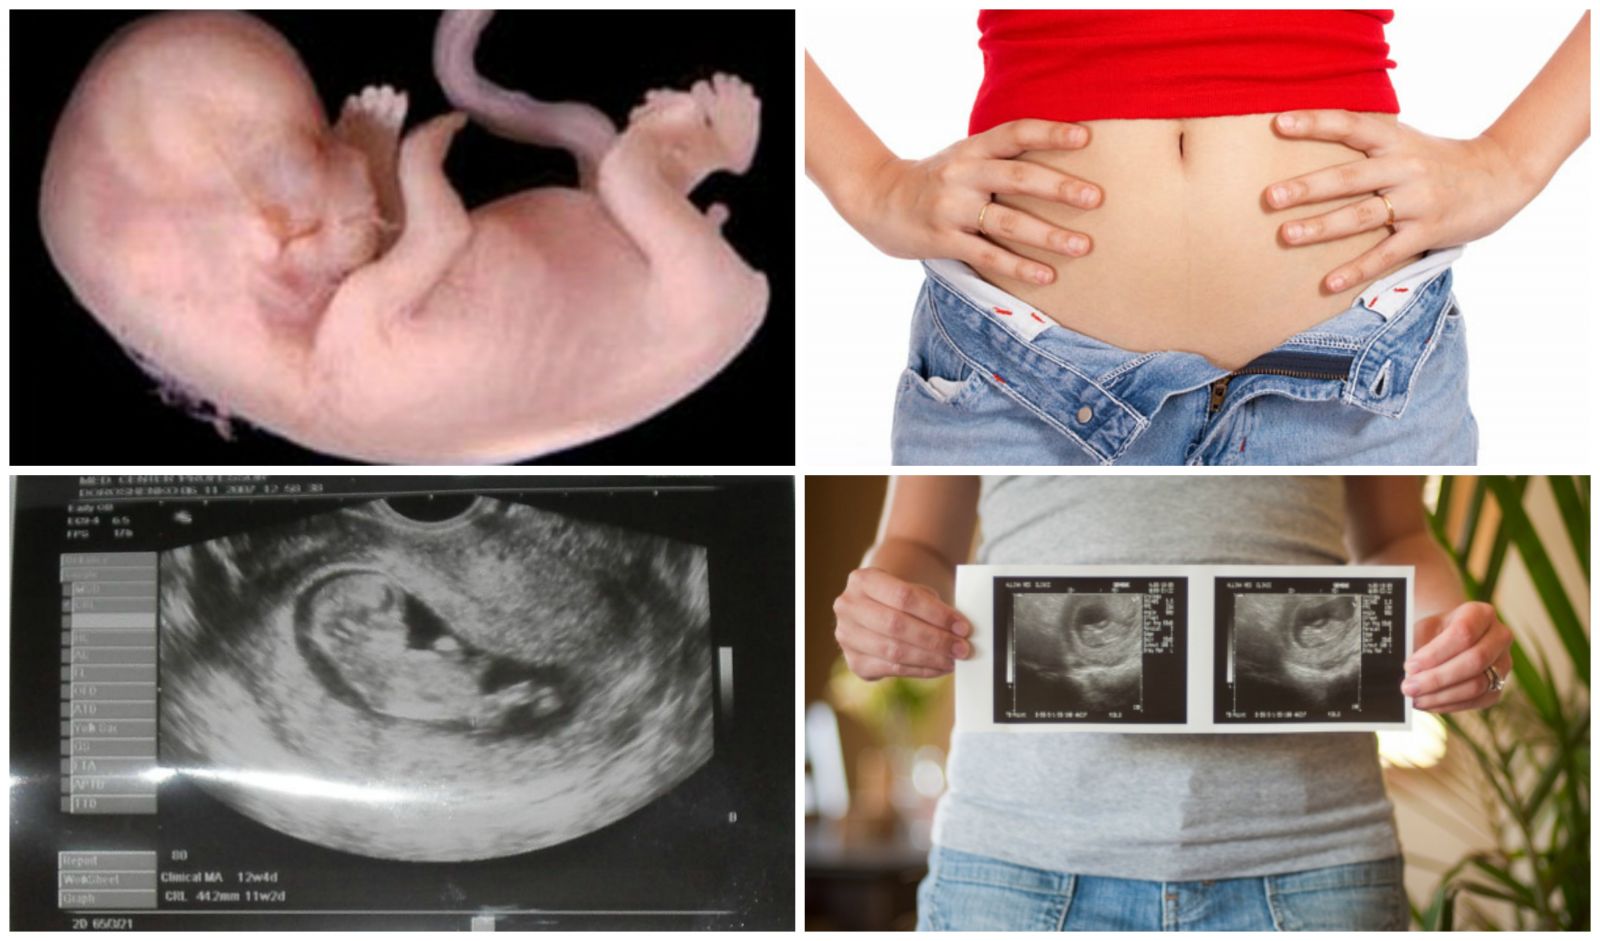 Плод 11 недель фото. Малыш на 11 неделе беременности скрининг. УЗИ на 11 неделе беременности скрининг. УЗИ плода на 11 неделе беременности. УЗИ малыша 11 недель.